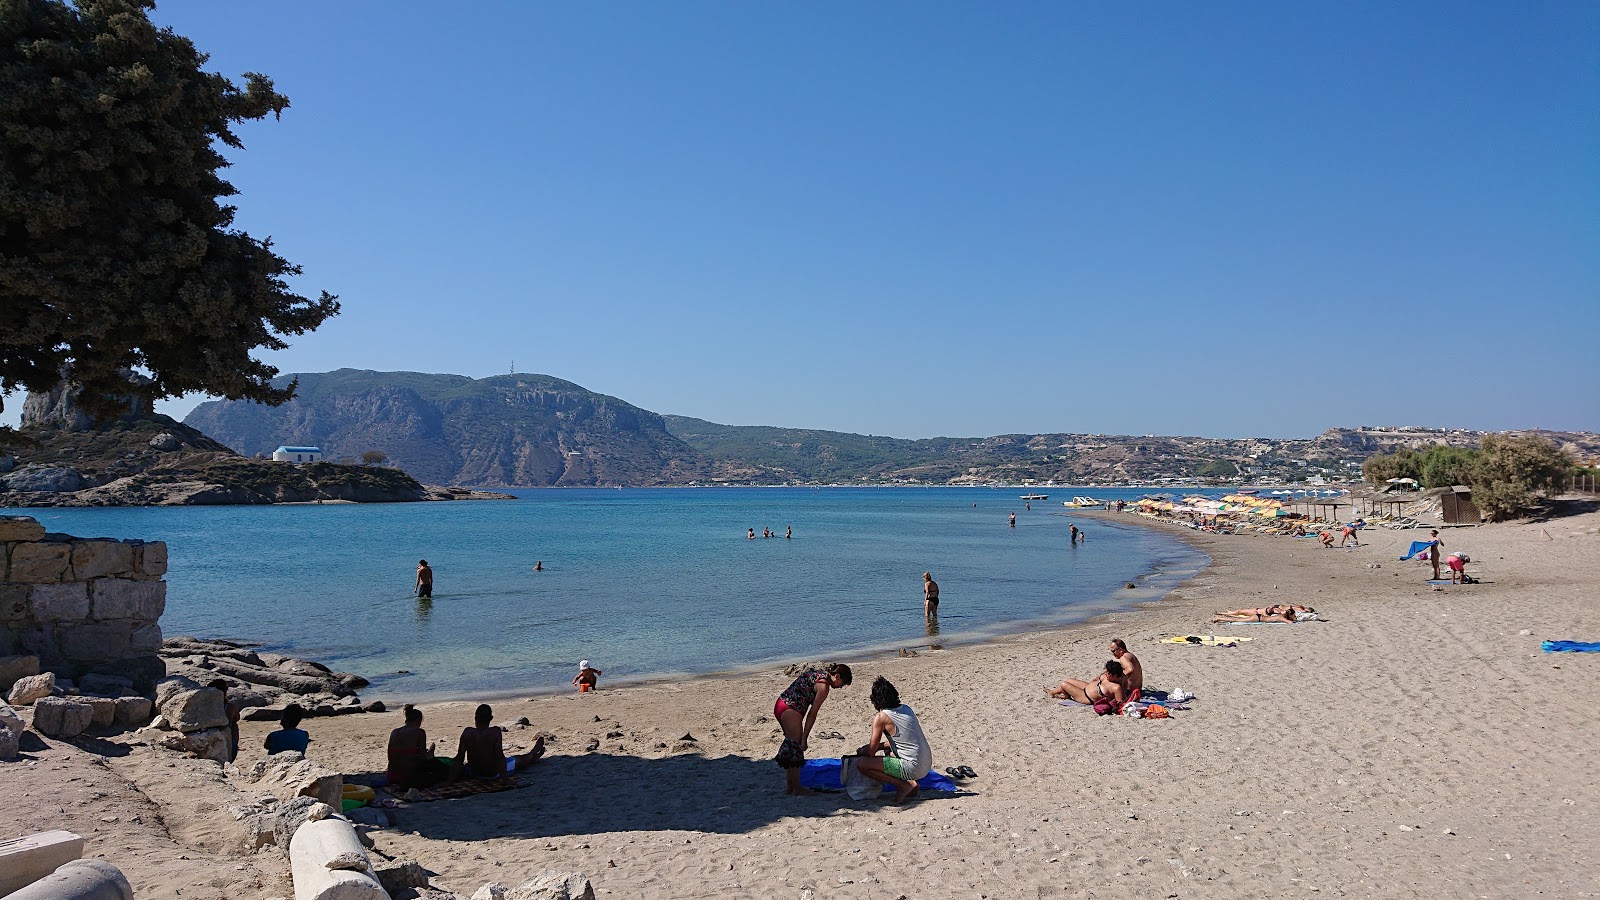 Agios Stefanos'in fotoğrafı çakıl ile kum yüzey ile